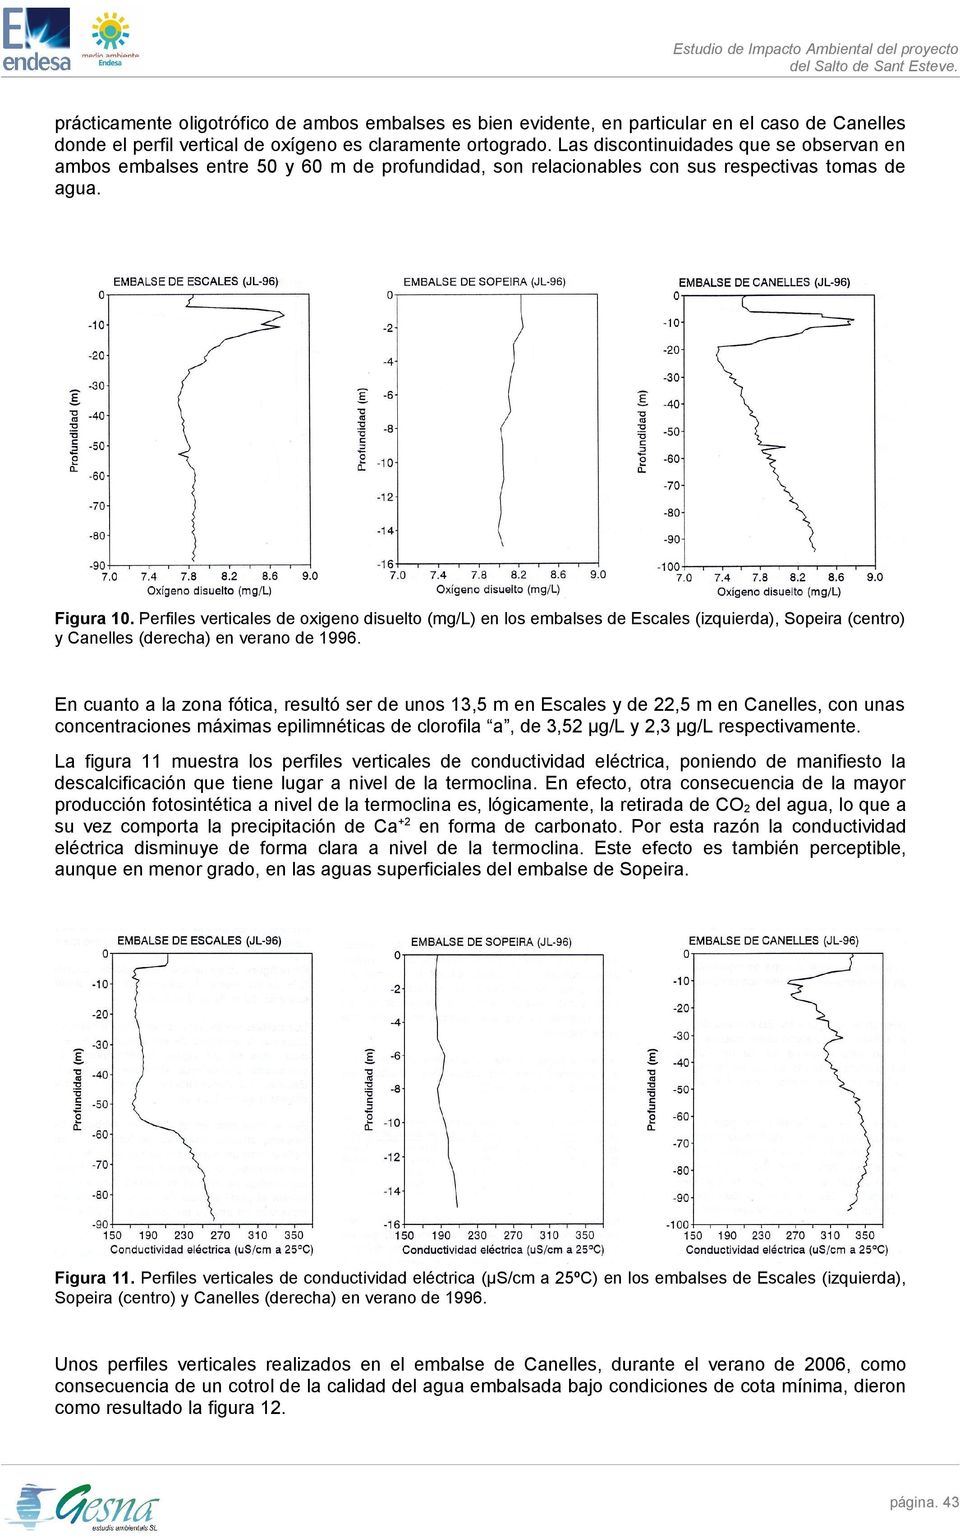 Perfiles verticales de oxigeno disuelto (mg/l) en los embalses de Escales (izquierda), Sopeira (centro) y Canelles (derecha) en verano de 1996.